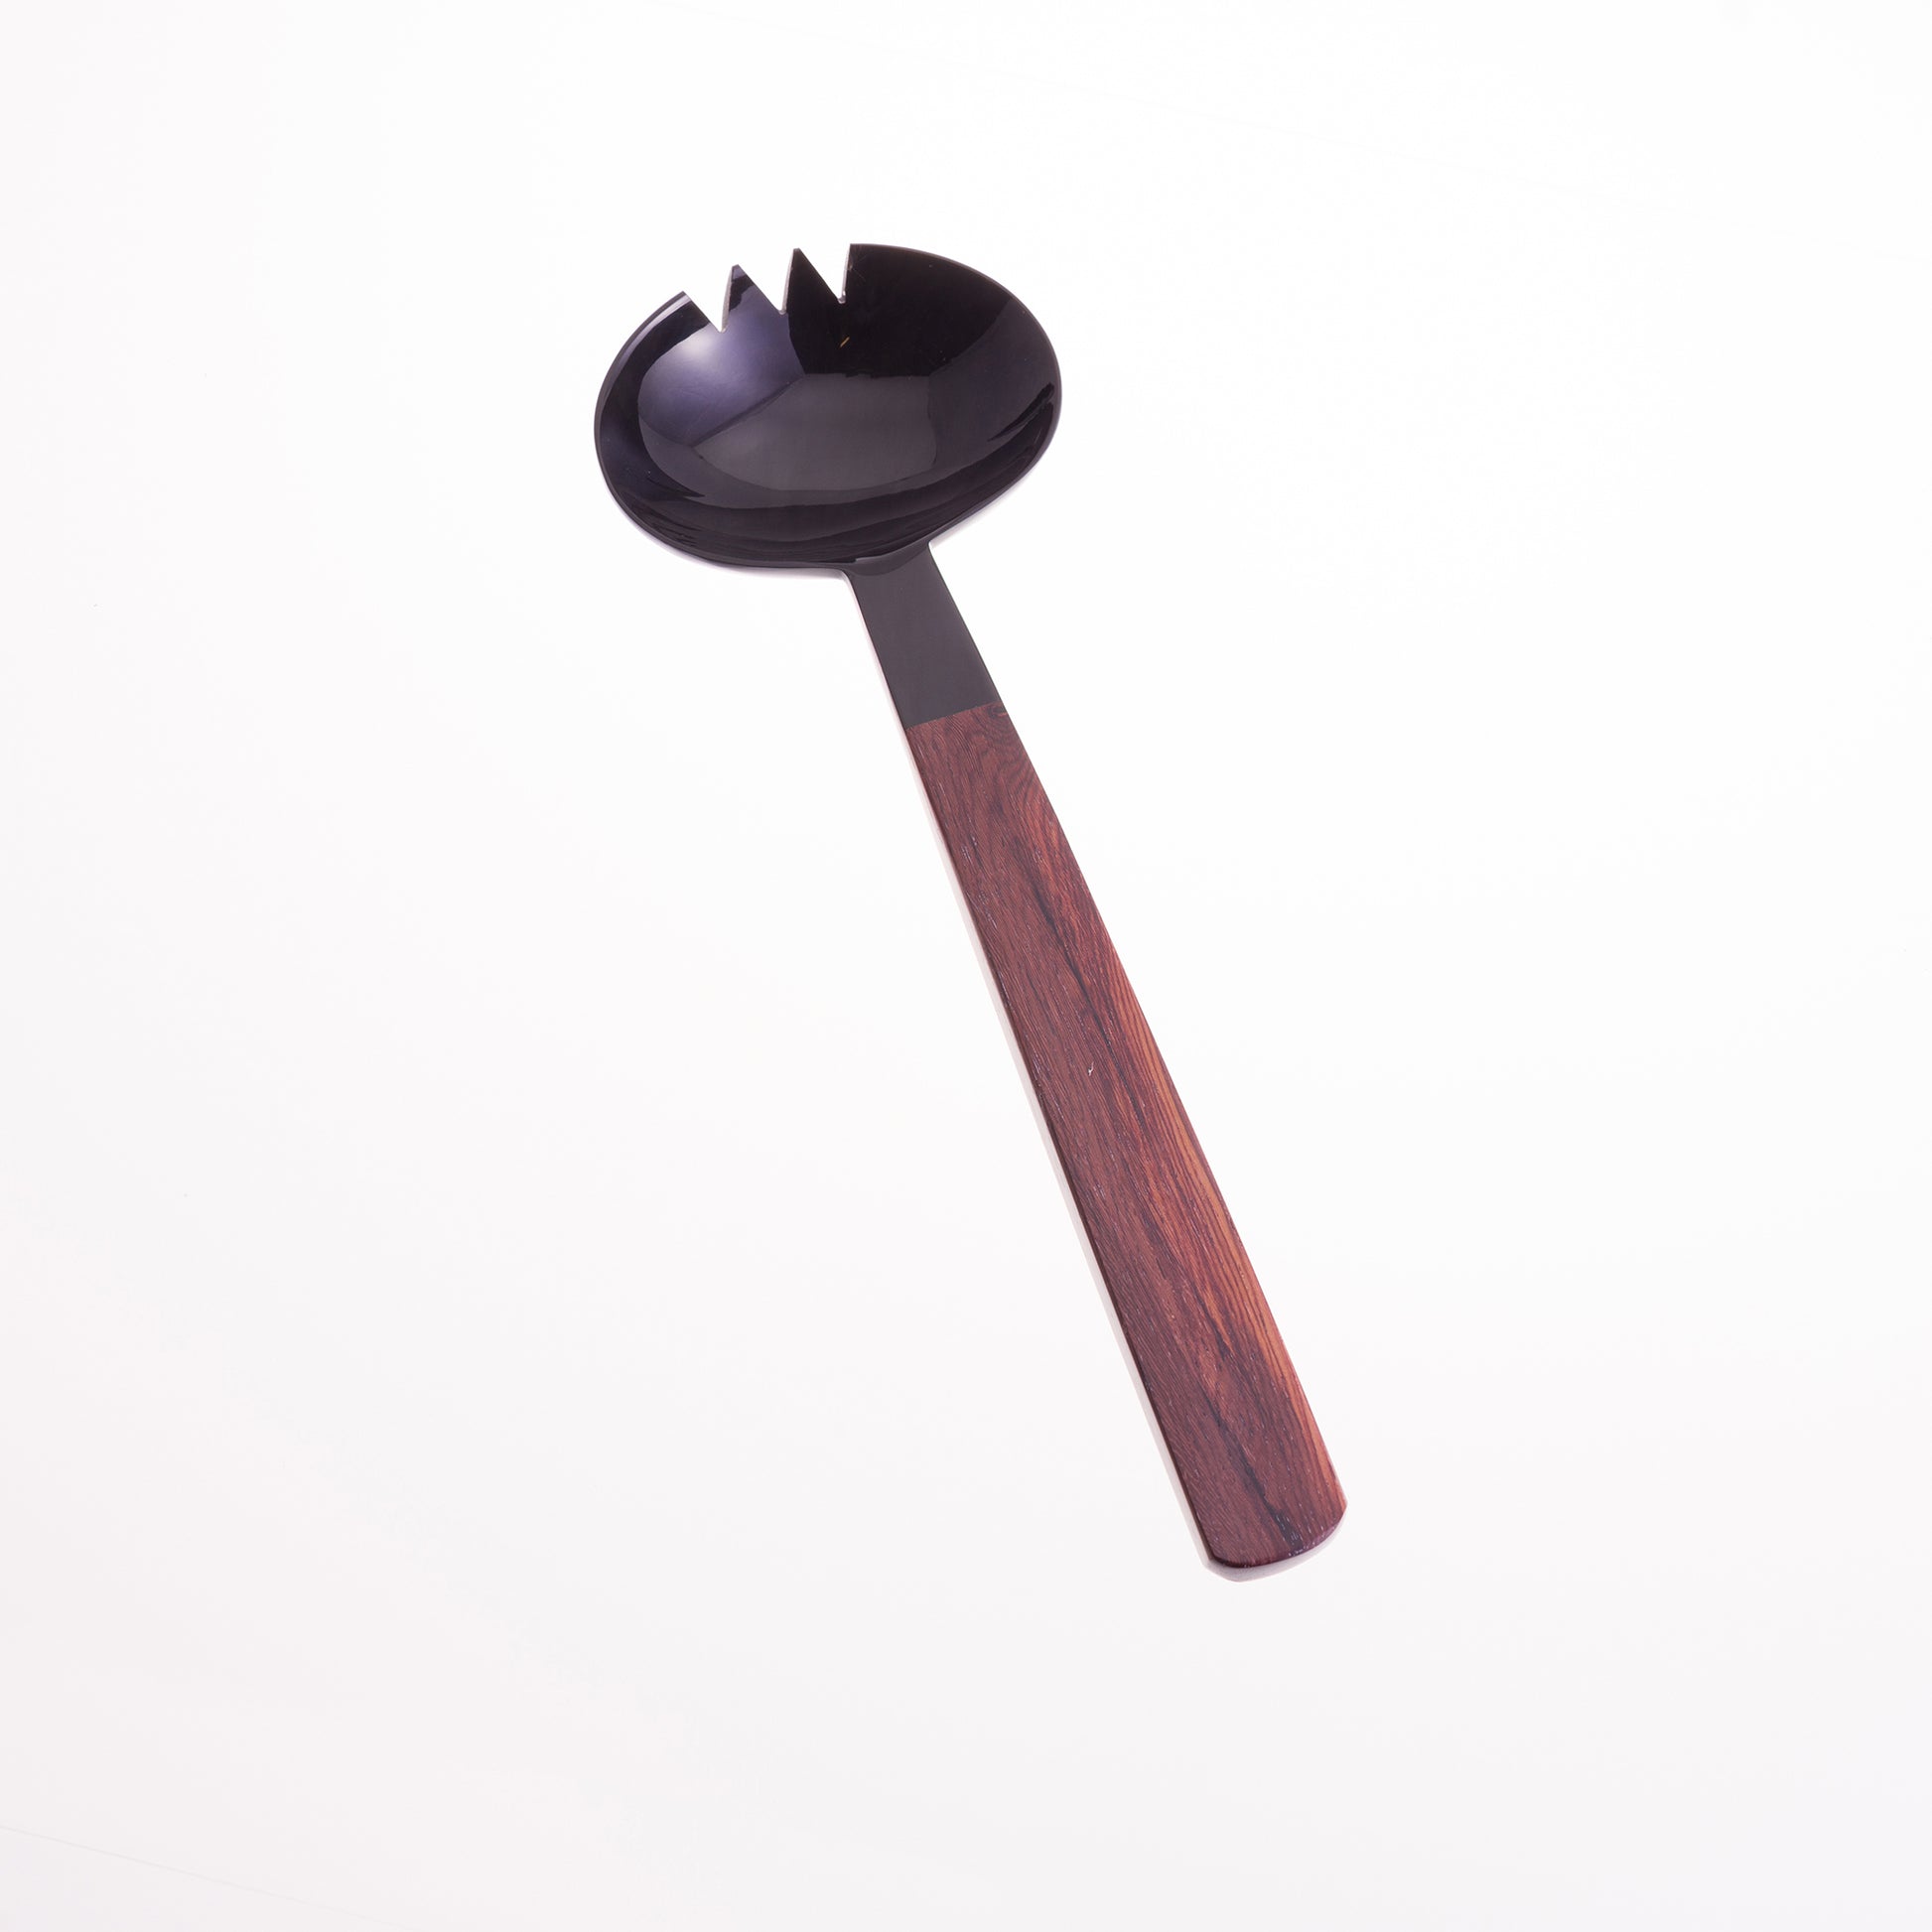 Oval shaped black horn salad server fork with rosewood handles